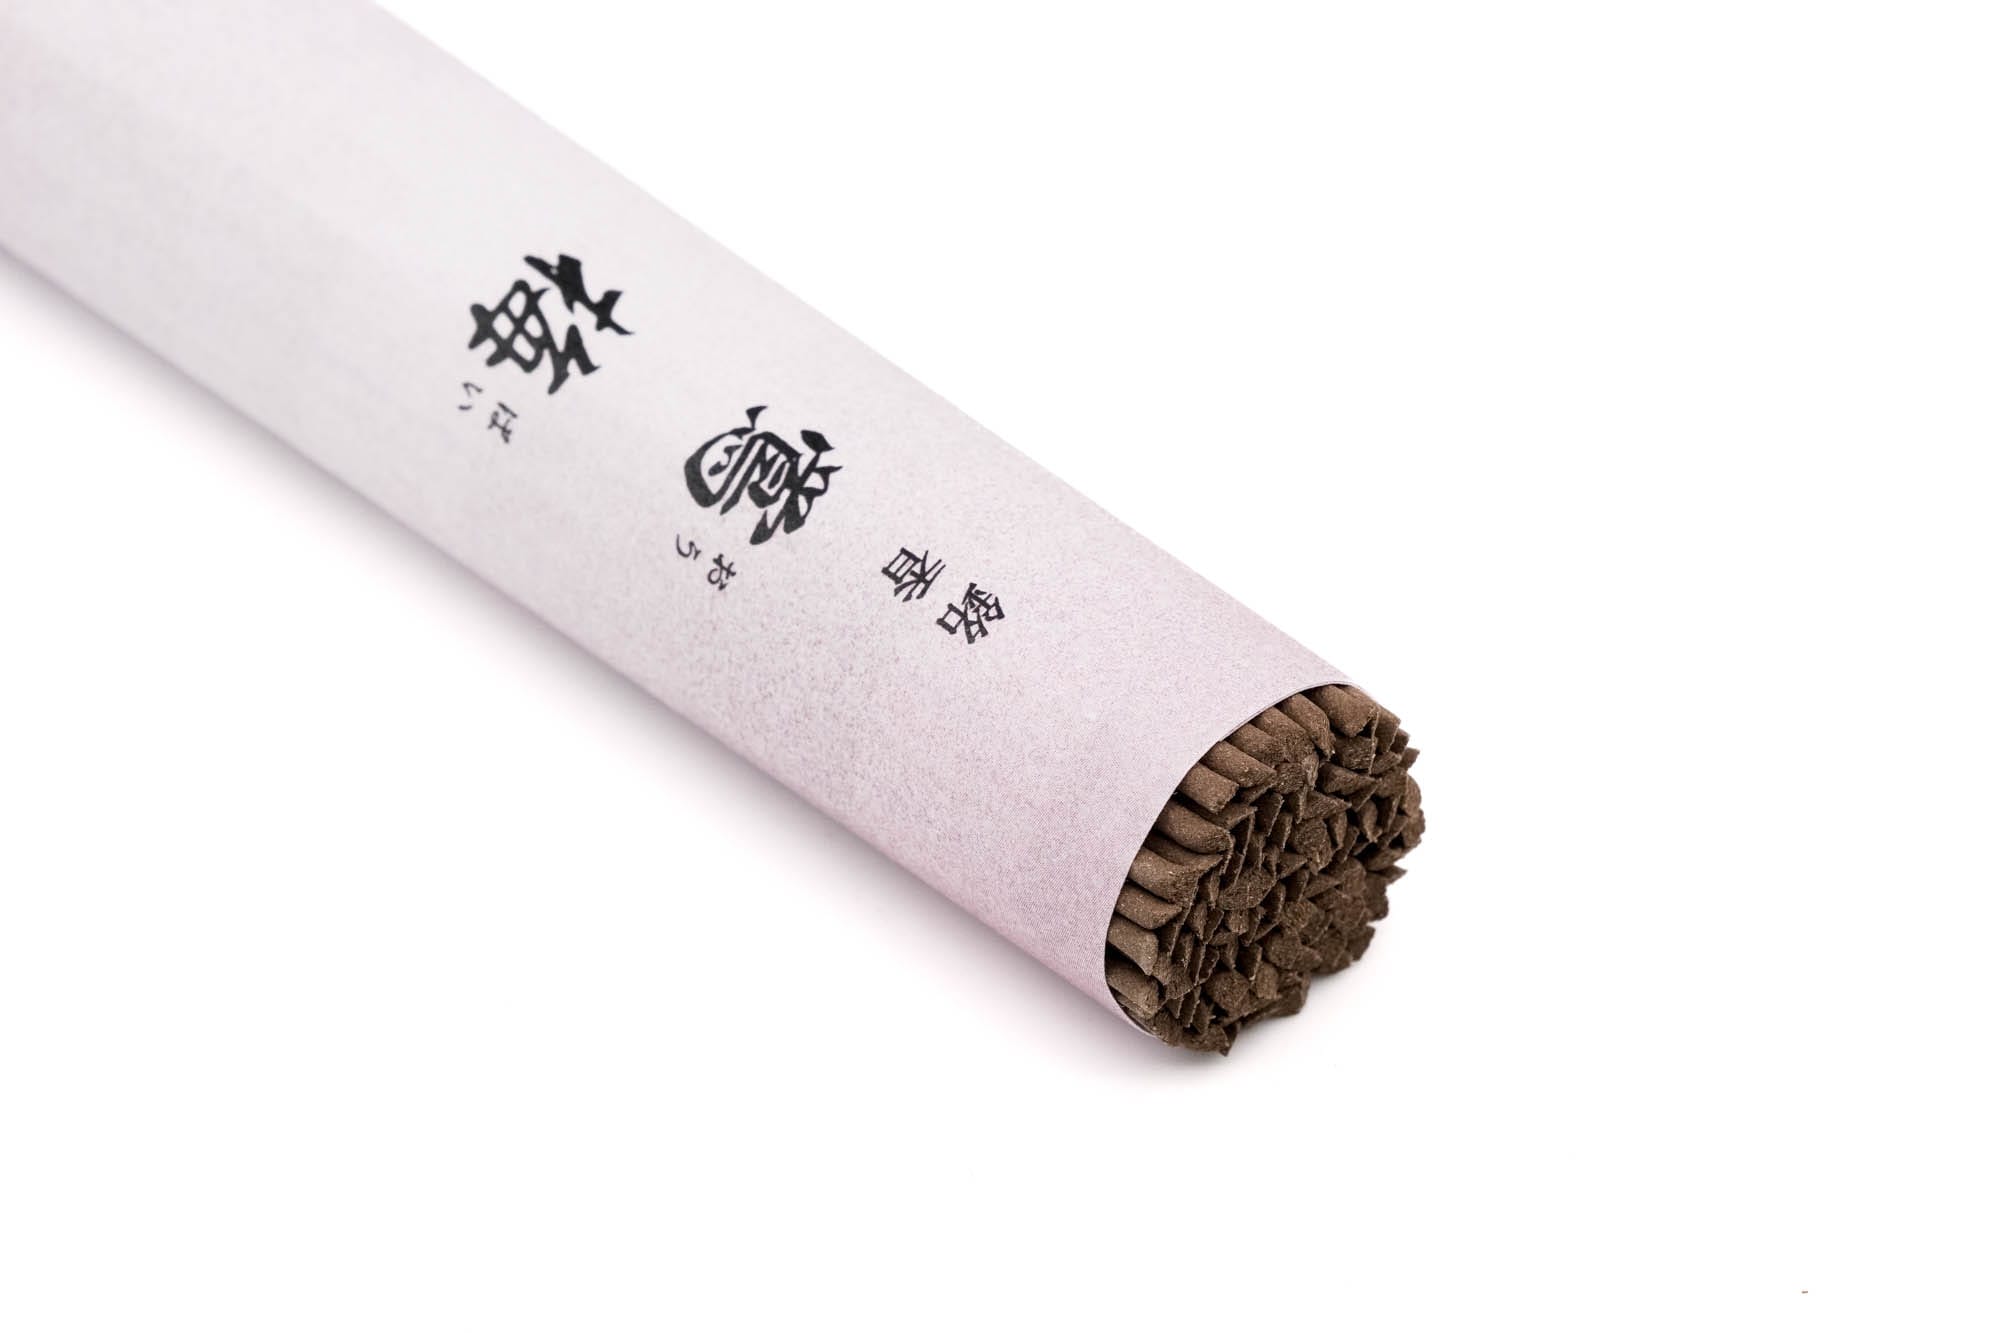 山田松 Yamadamatsu - Ōbai Herbal Blend Incense Sticks